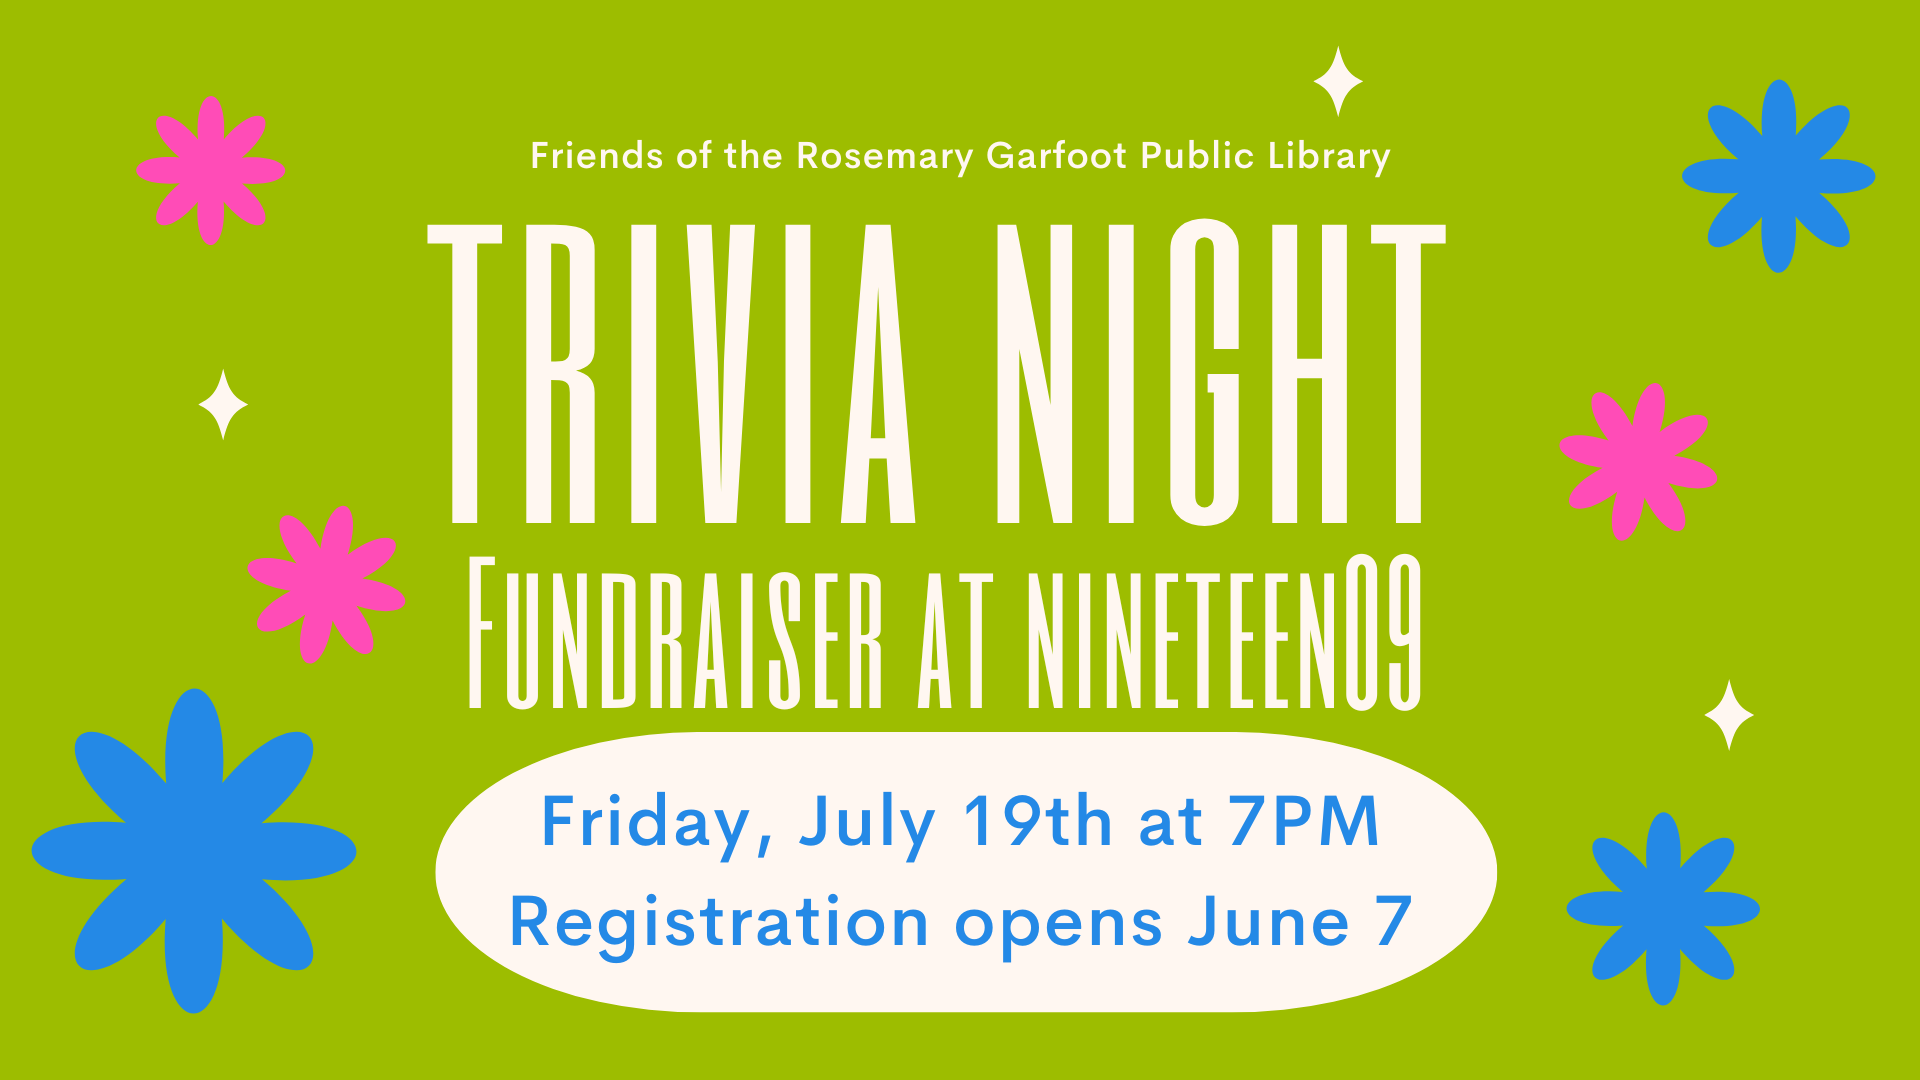 trivia night fundraiser at nineteen09 banner